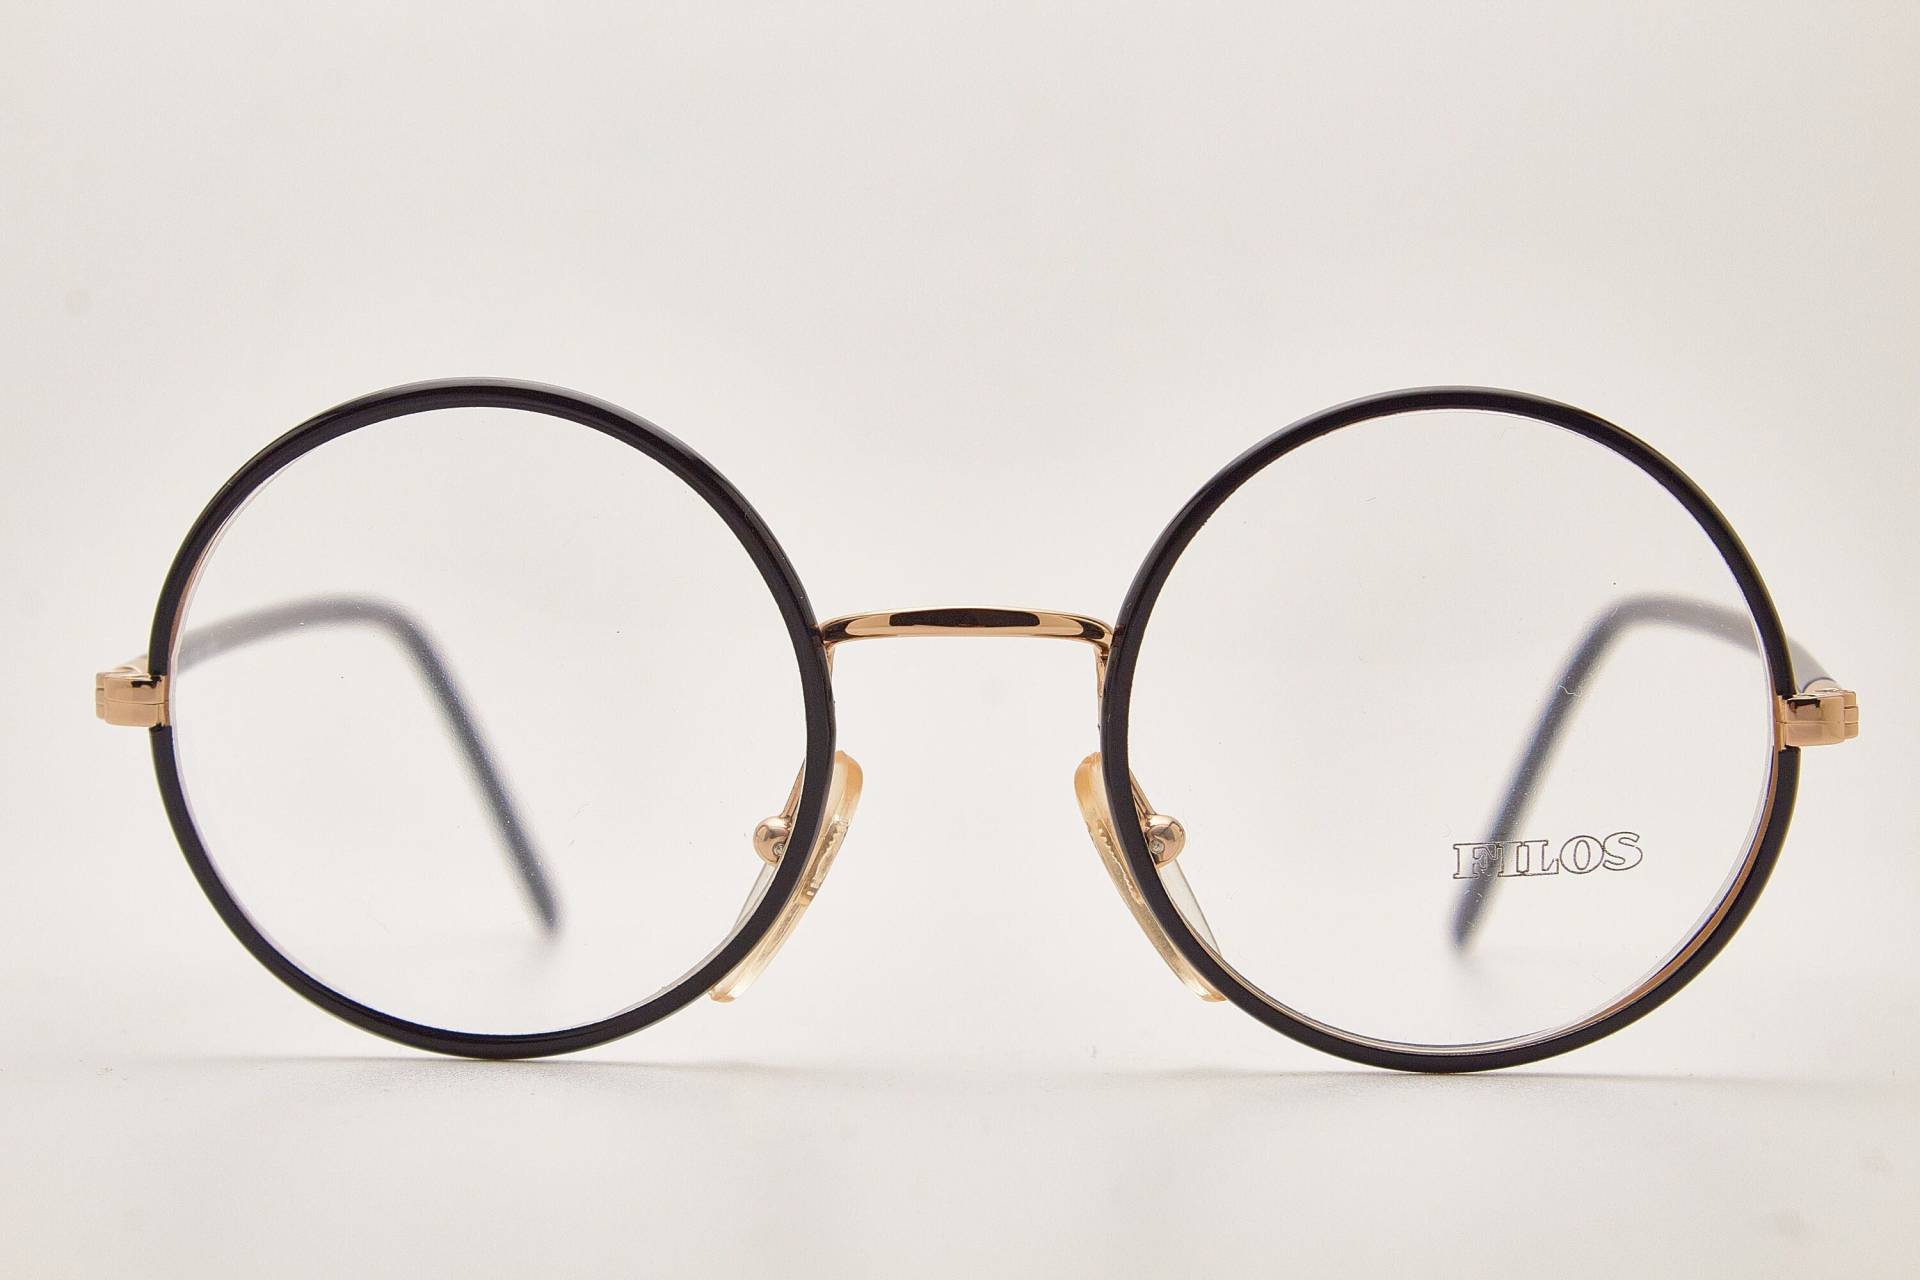 Filos 5488 45-20 Schwarz/Poliertes Gold Runder Rahmen/Vintage Brillen/Runde Brillen Vintage/90Er Jahre Brille/ von VintageGlassesVault